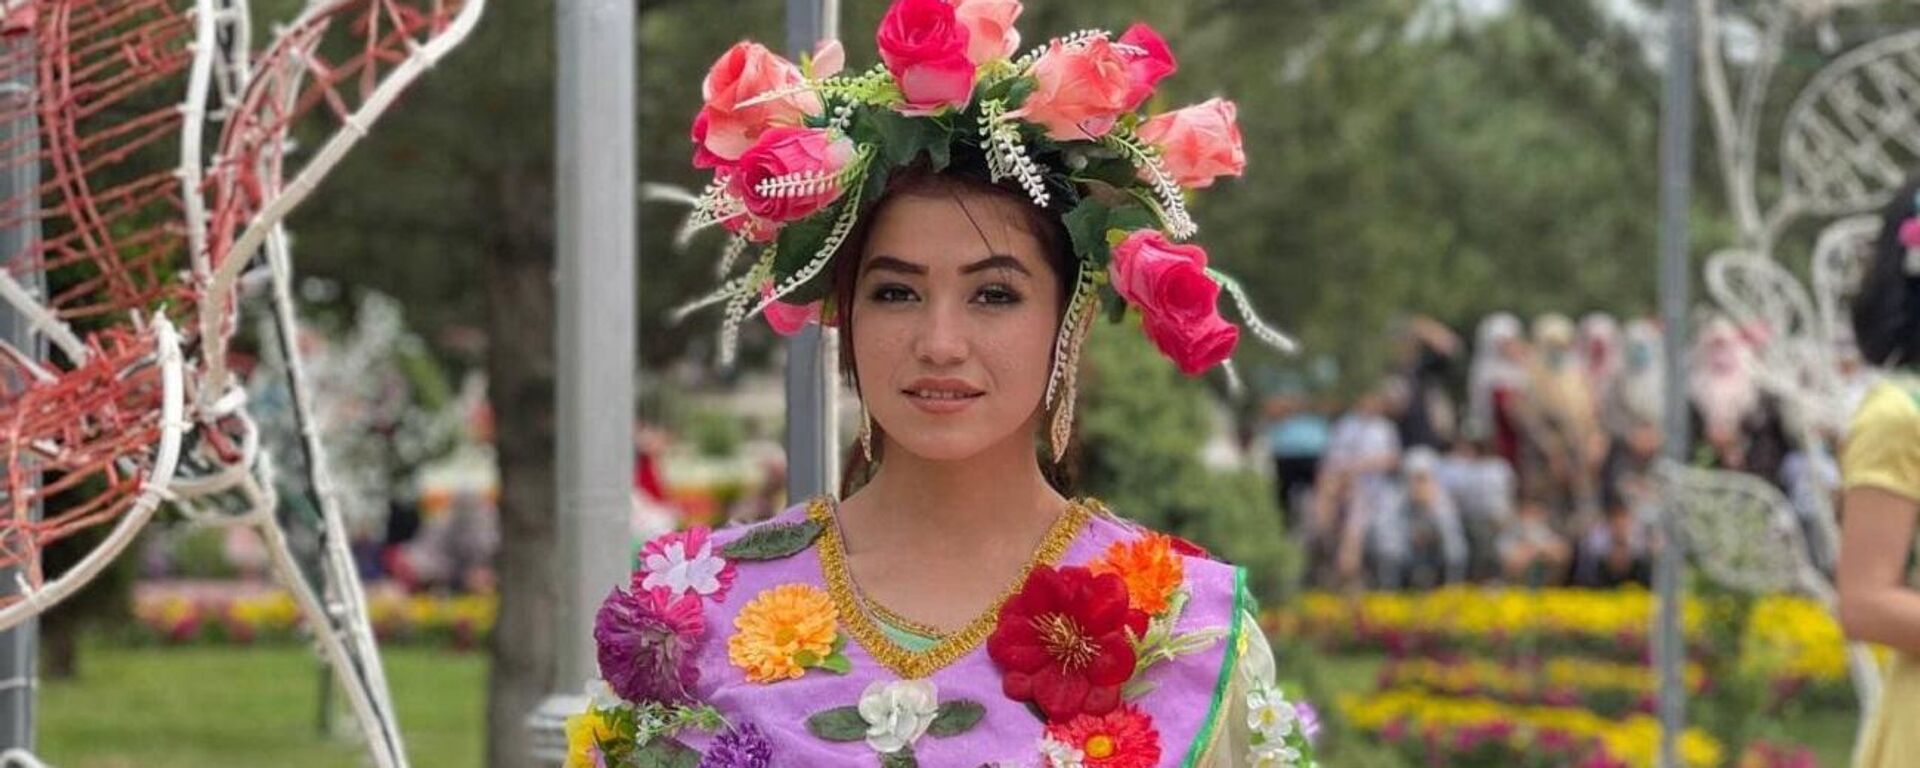 Участники Международного фестиваля цветов в Намангане - Sputnik Узбекистан, 1920, 23.05.2021